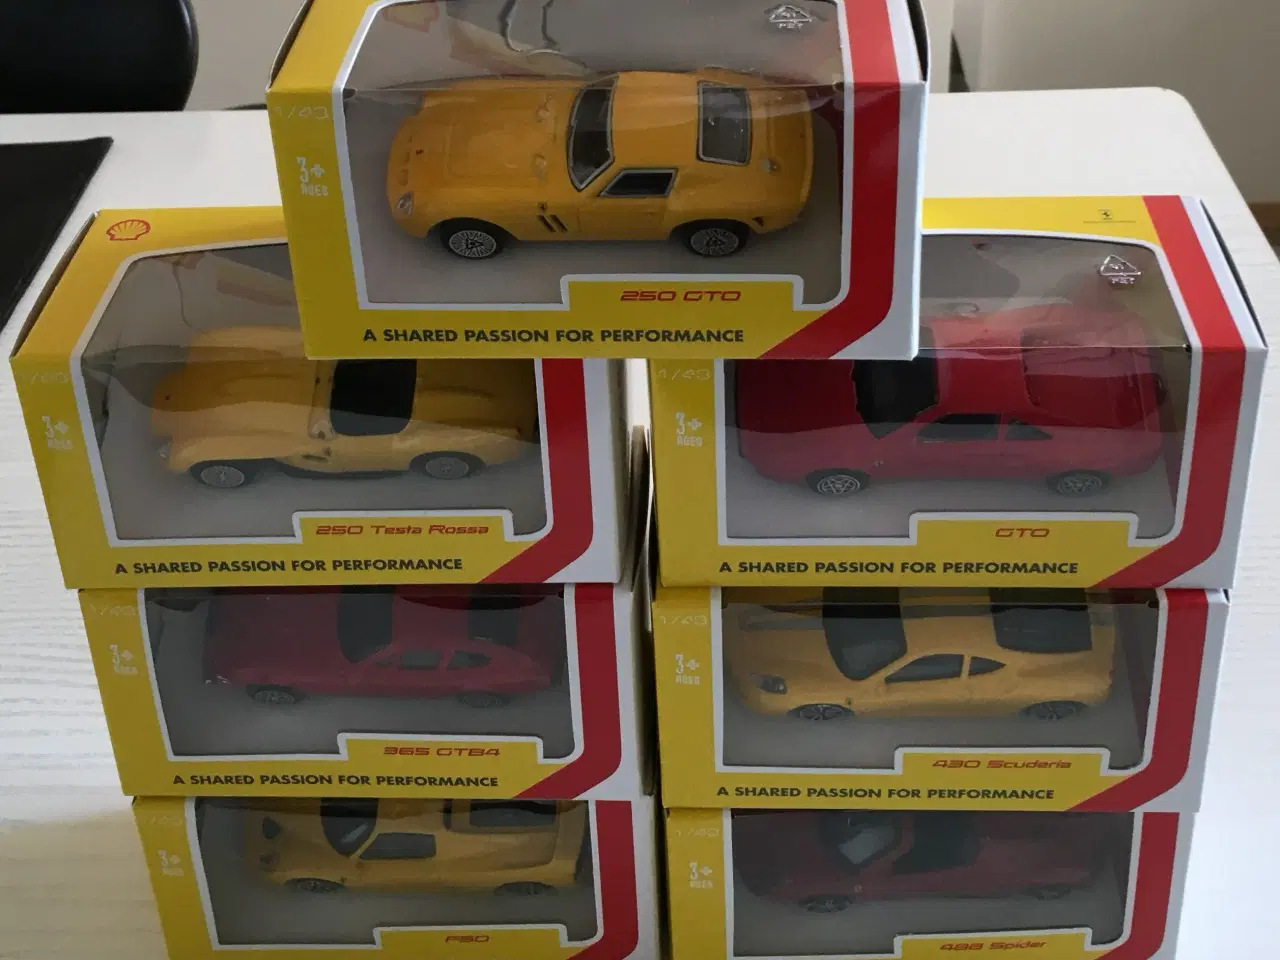 Billede 2 - Shell Ferrari biler